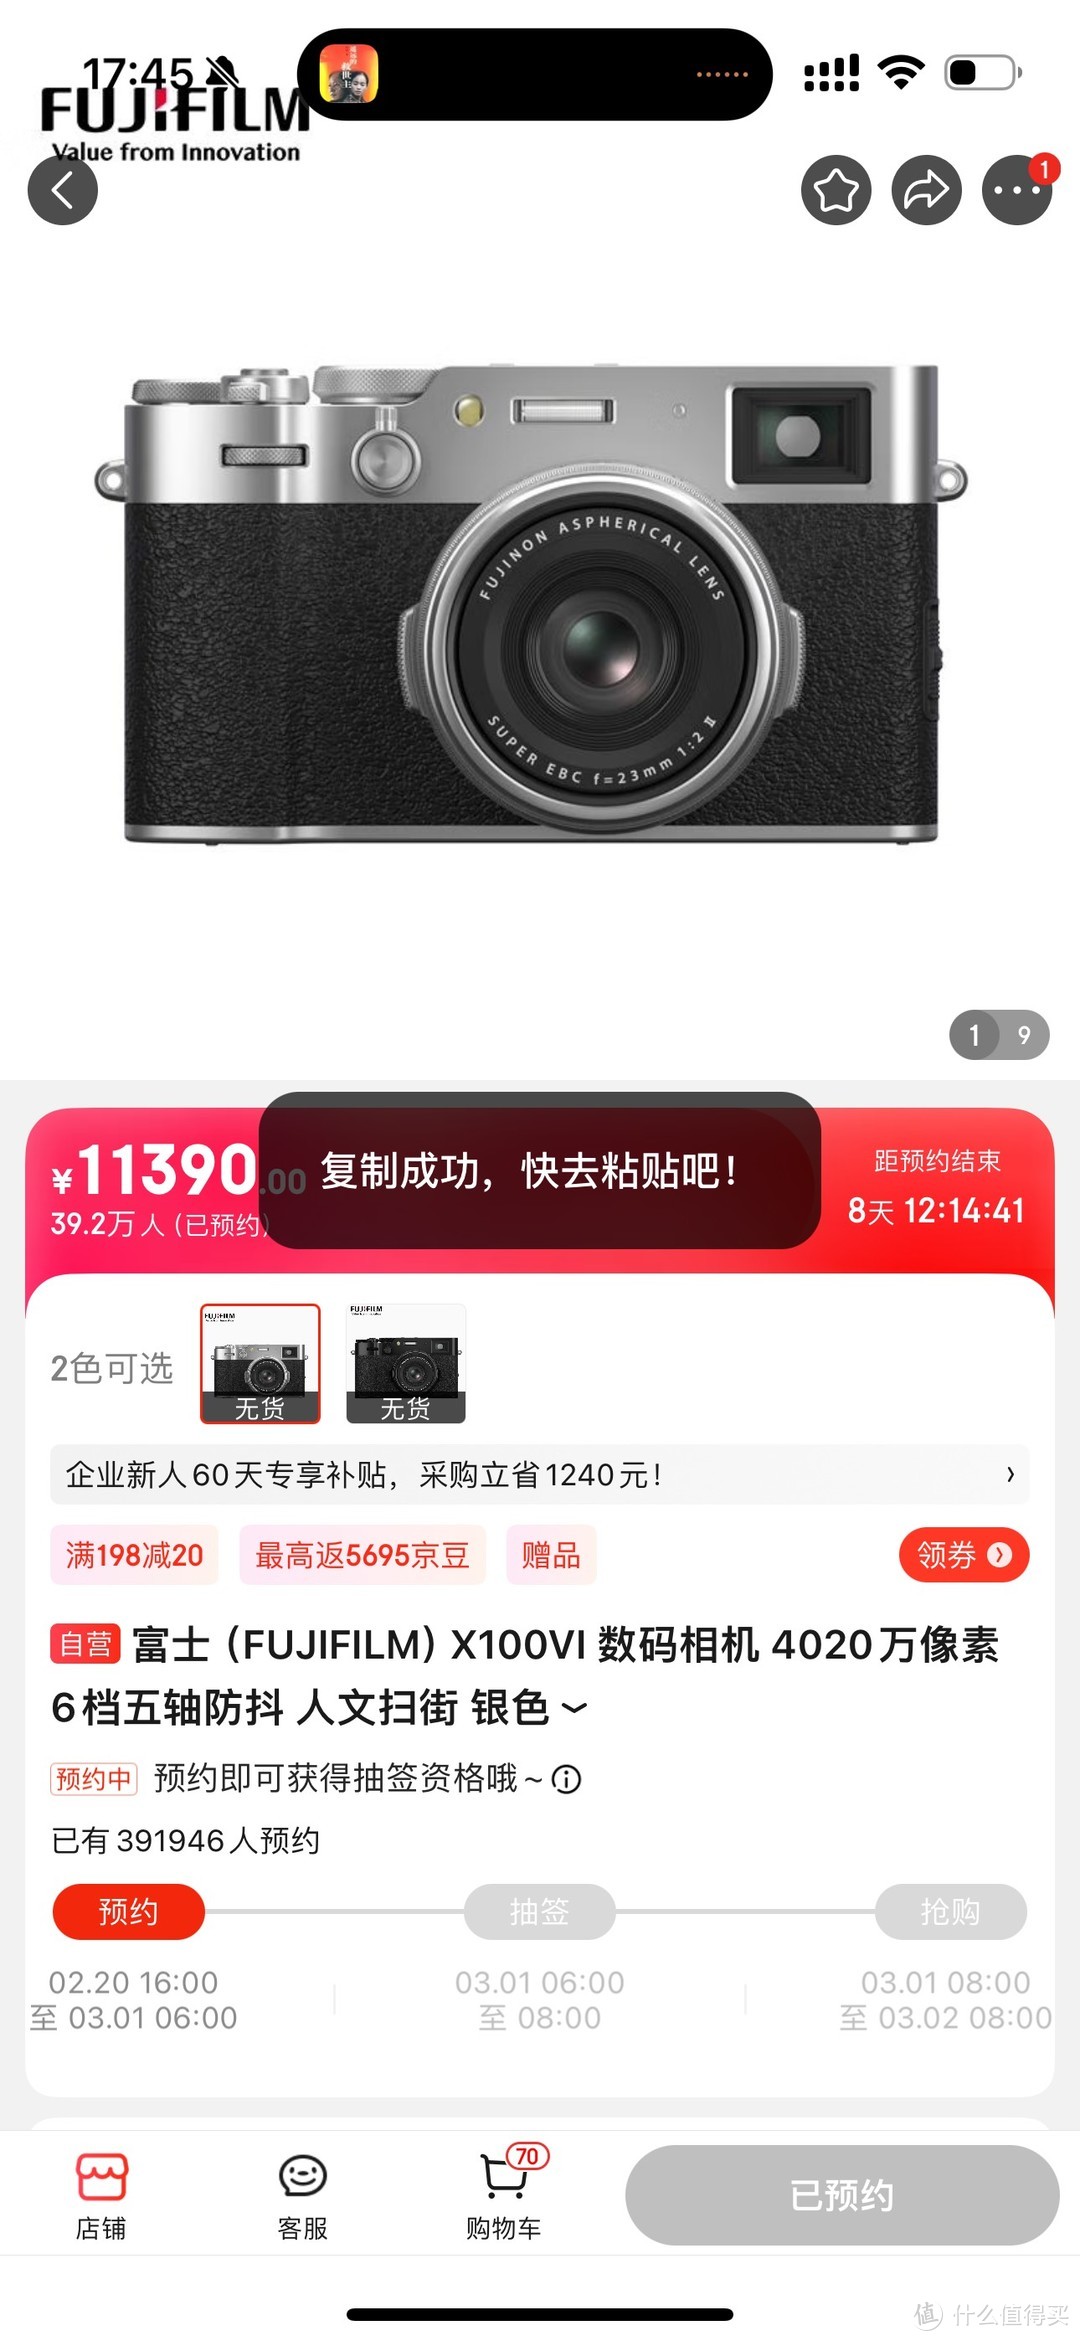 竟然有40万人要这11390元的富士（FUJIFILM）X100VI 数码相机！！！！